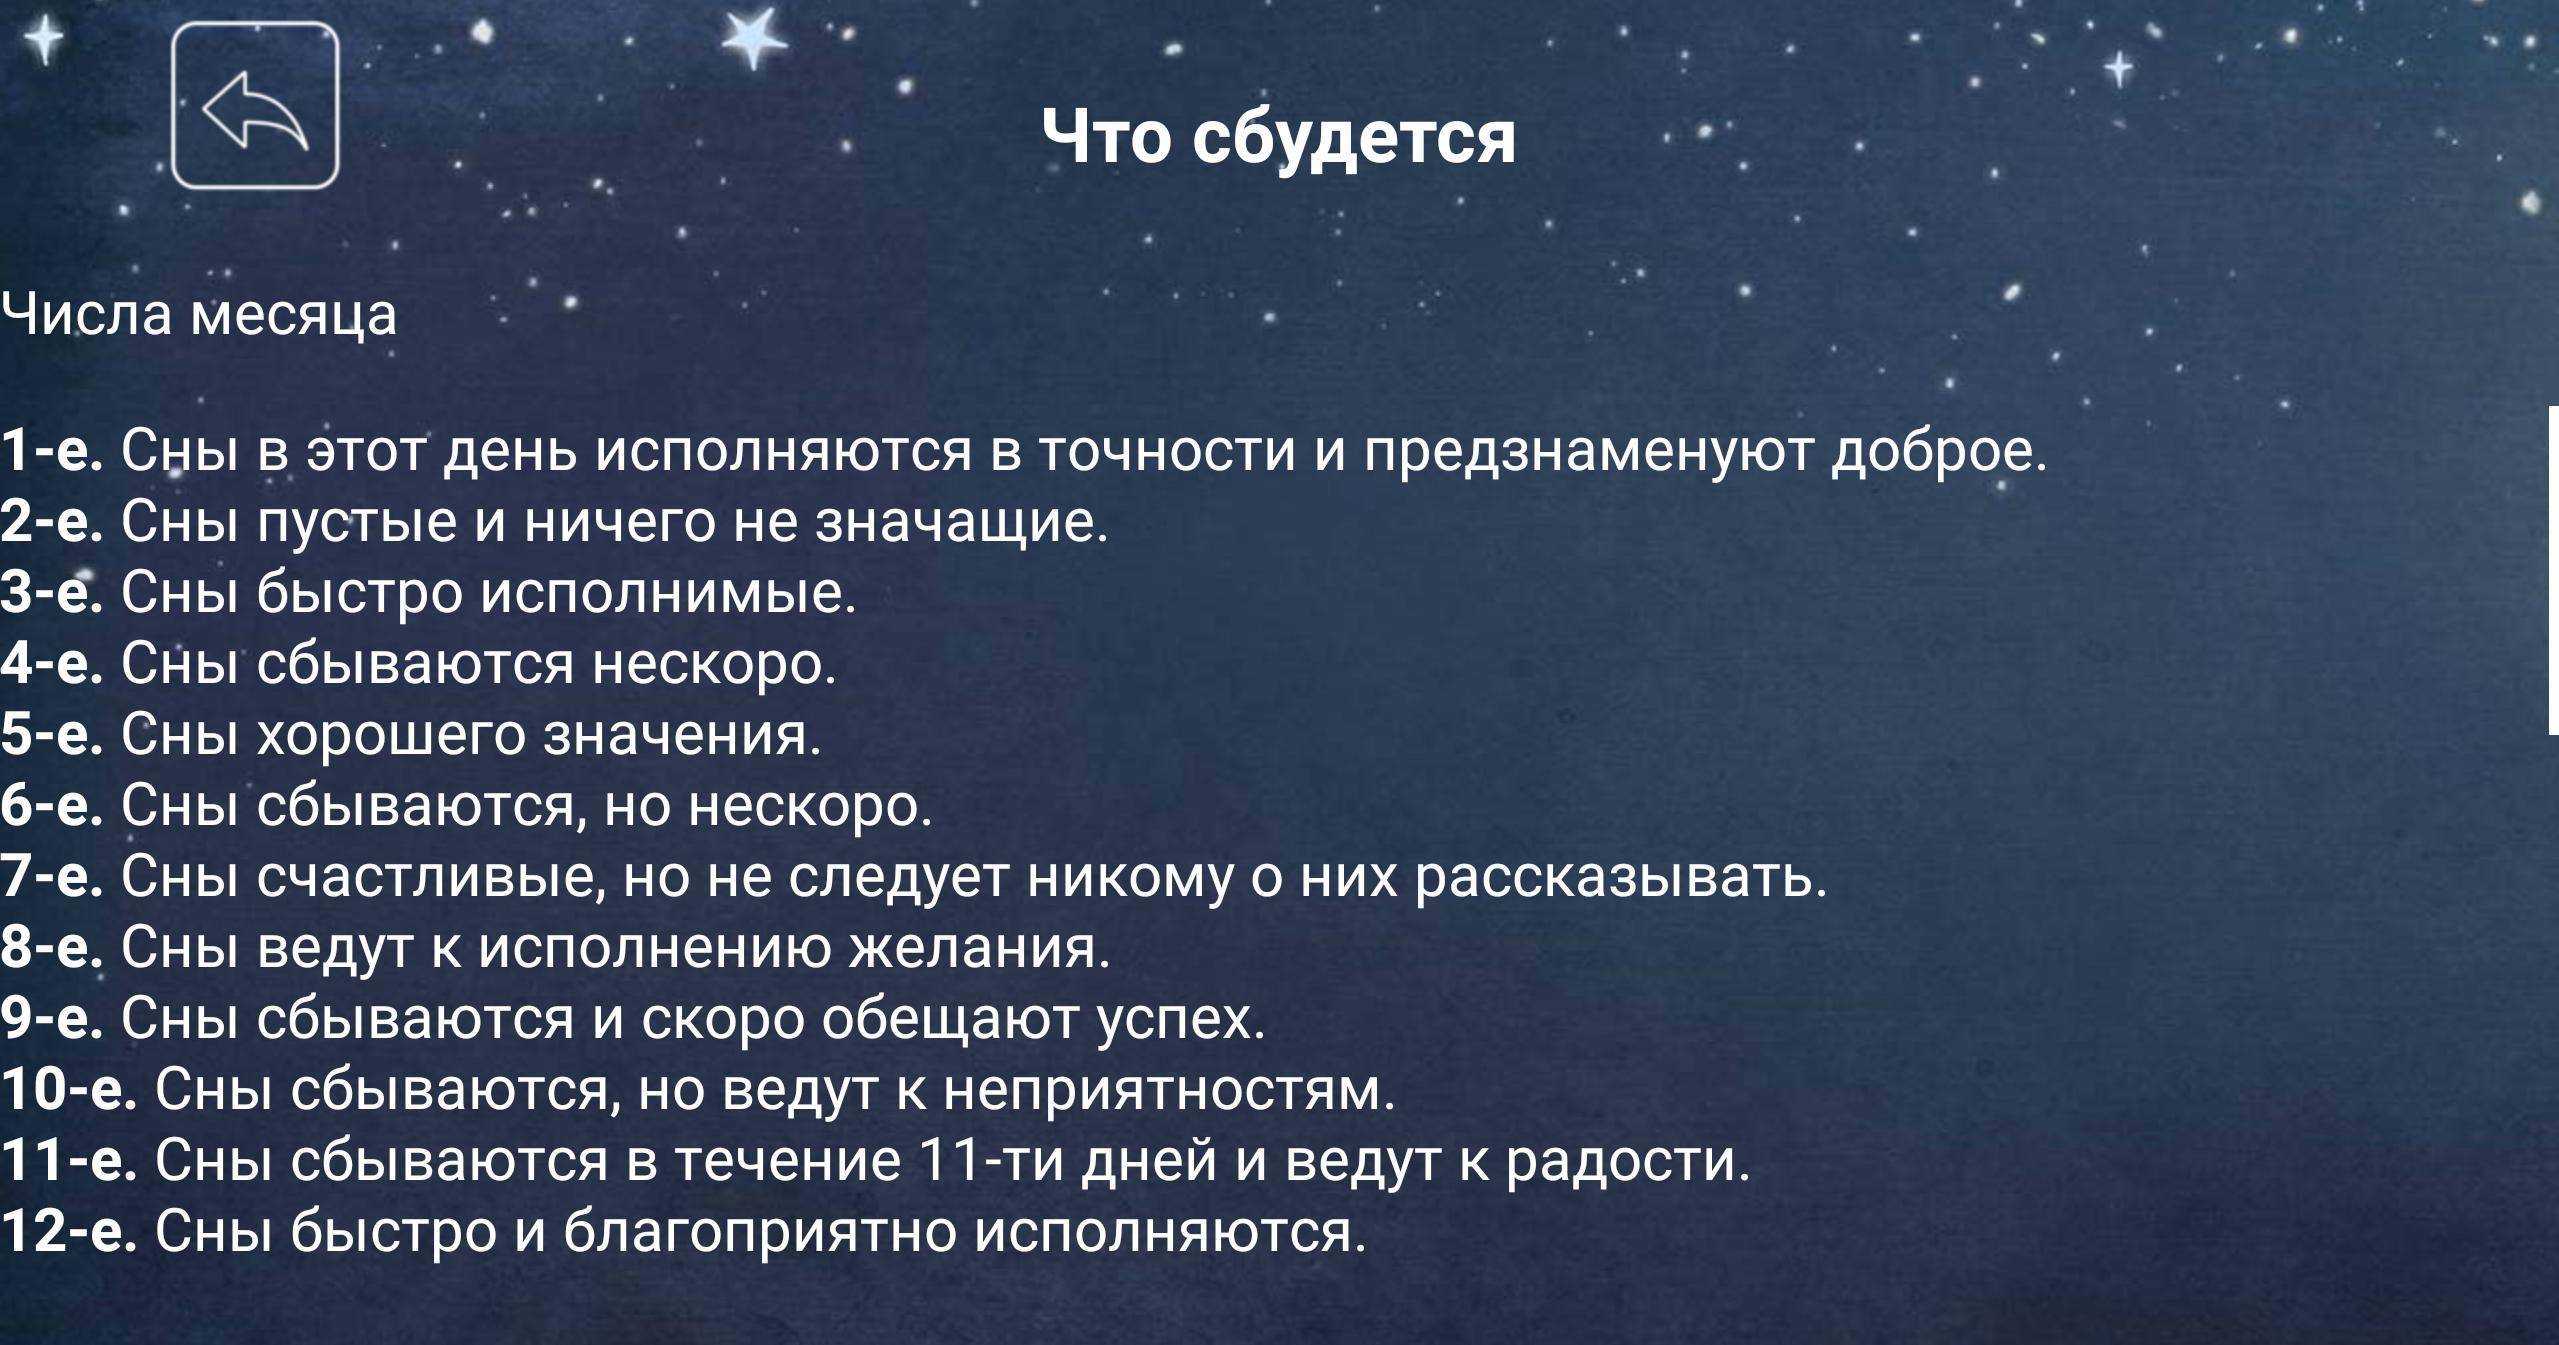 Когда снятся вещие сны: факты и суеверия, дни недели, отзывы :: syl.ru